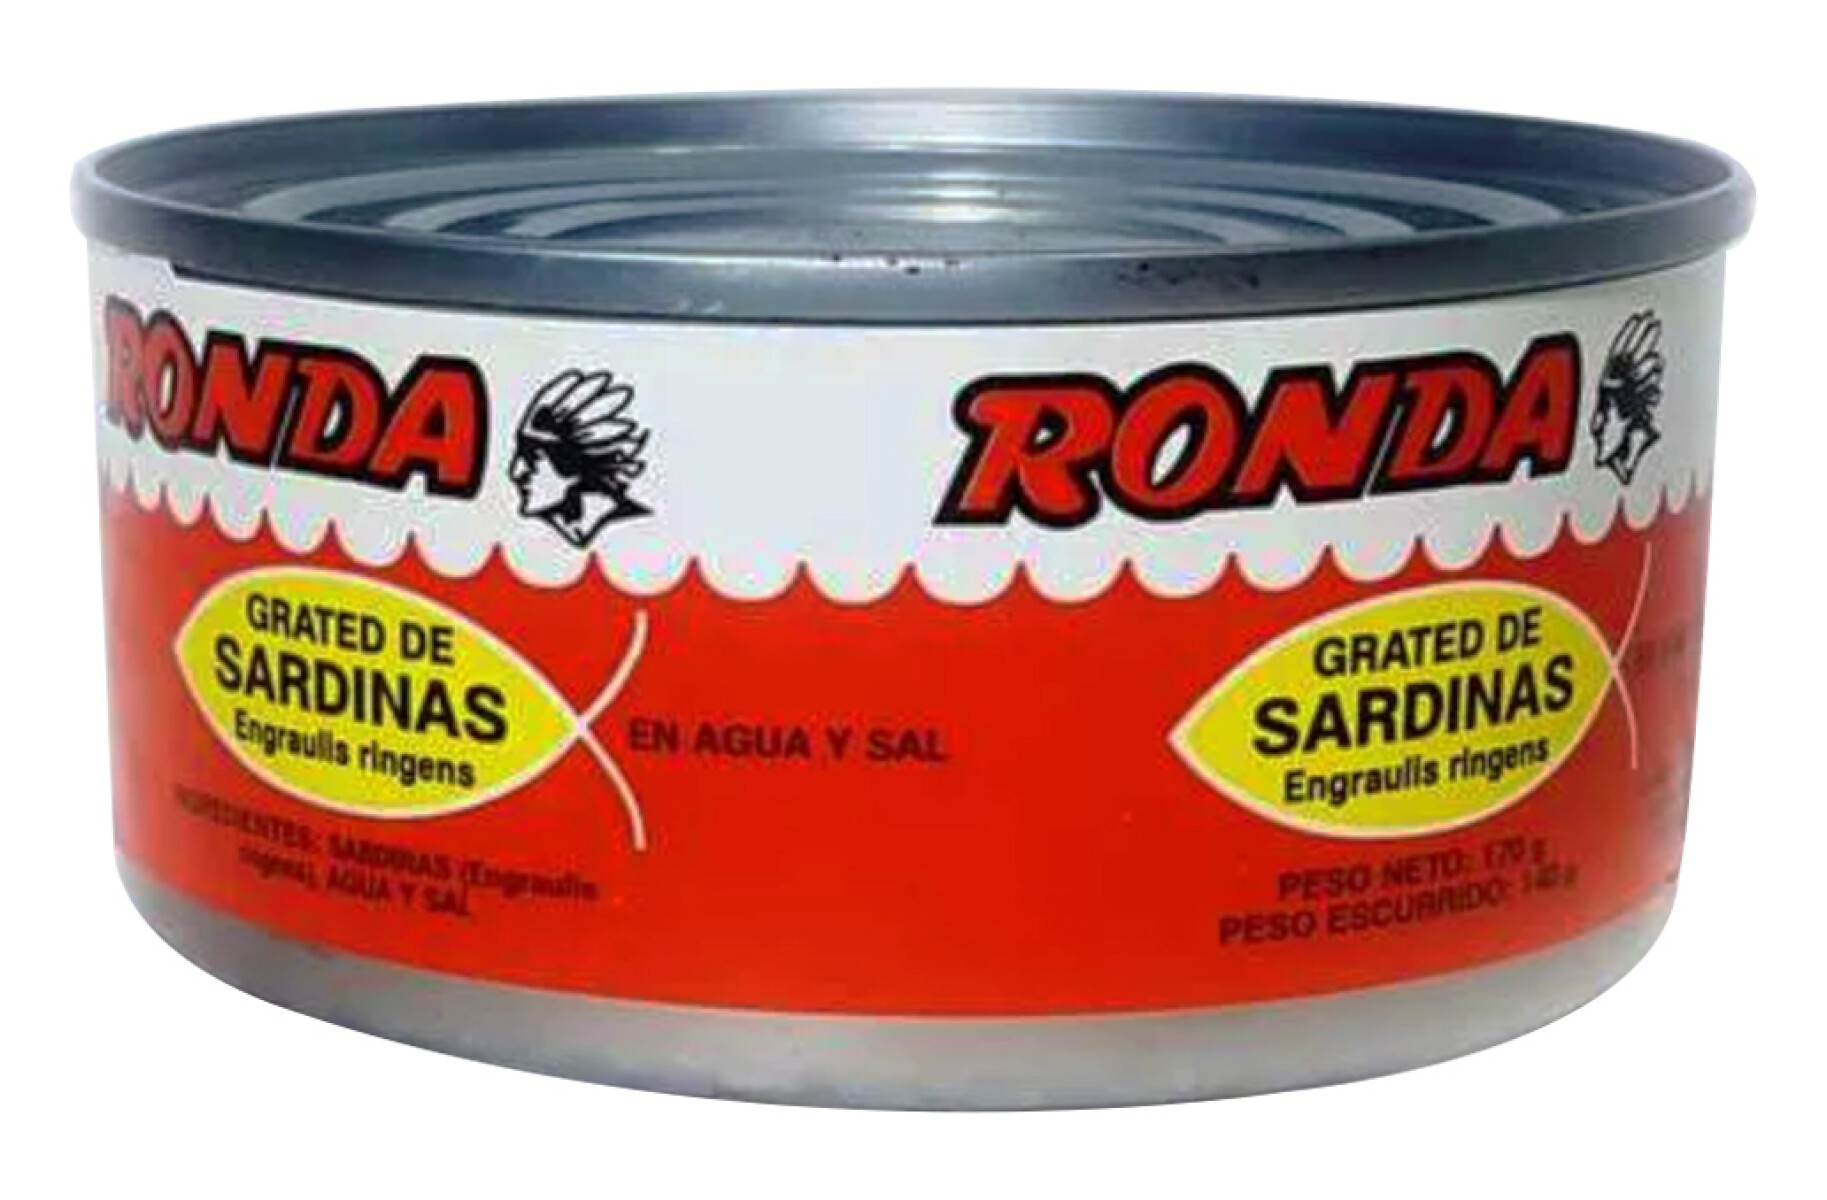 GRATED DE SARDINA RONDA 170G 